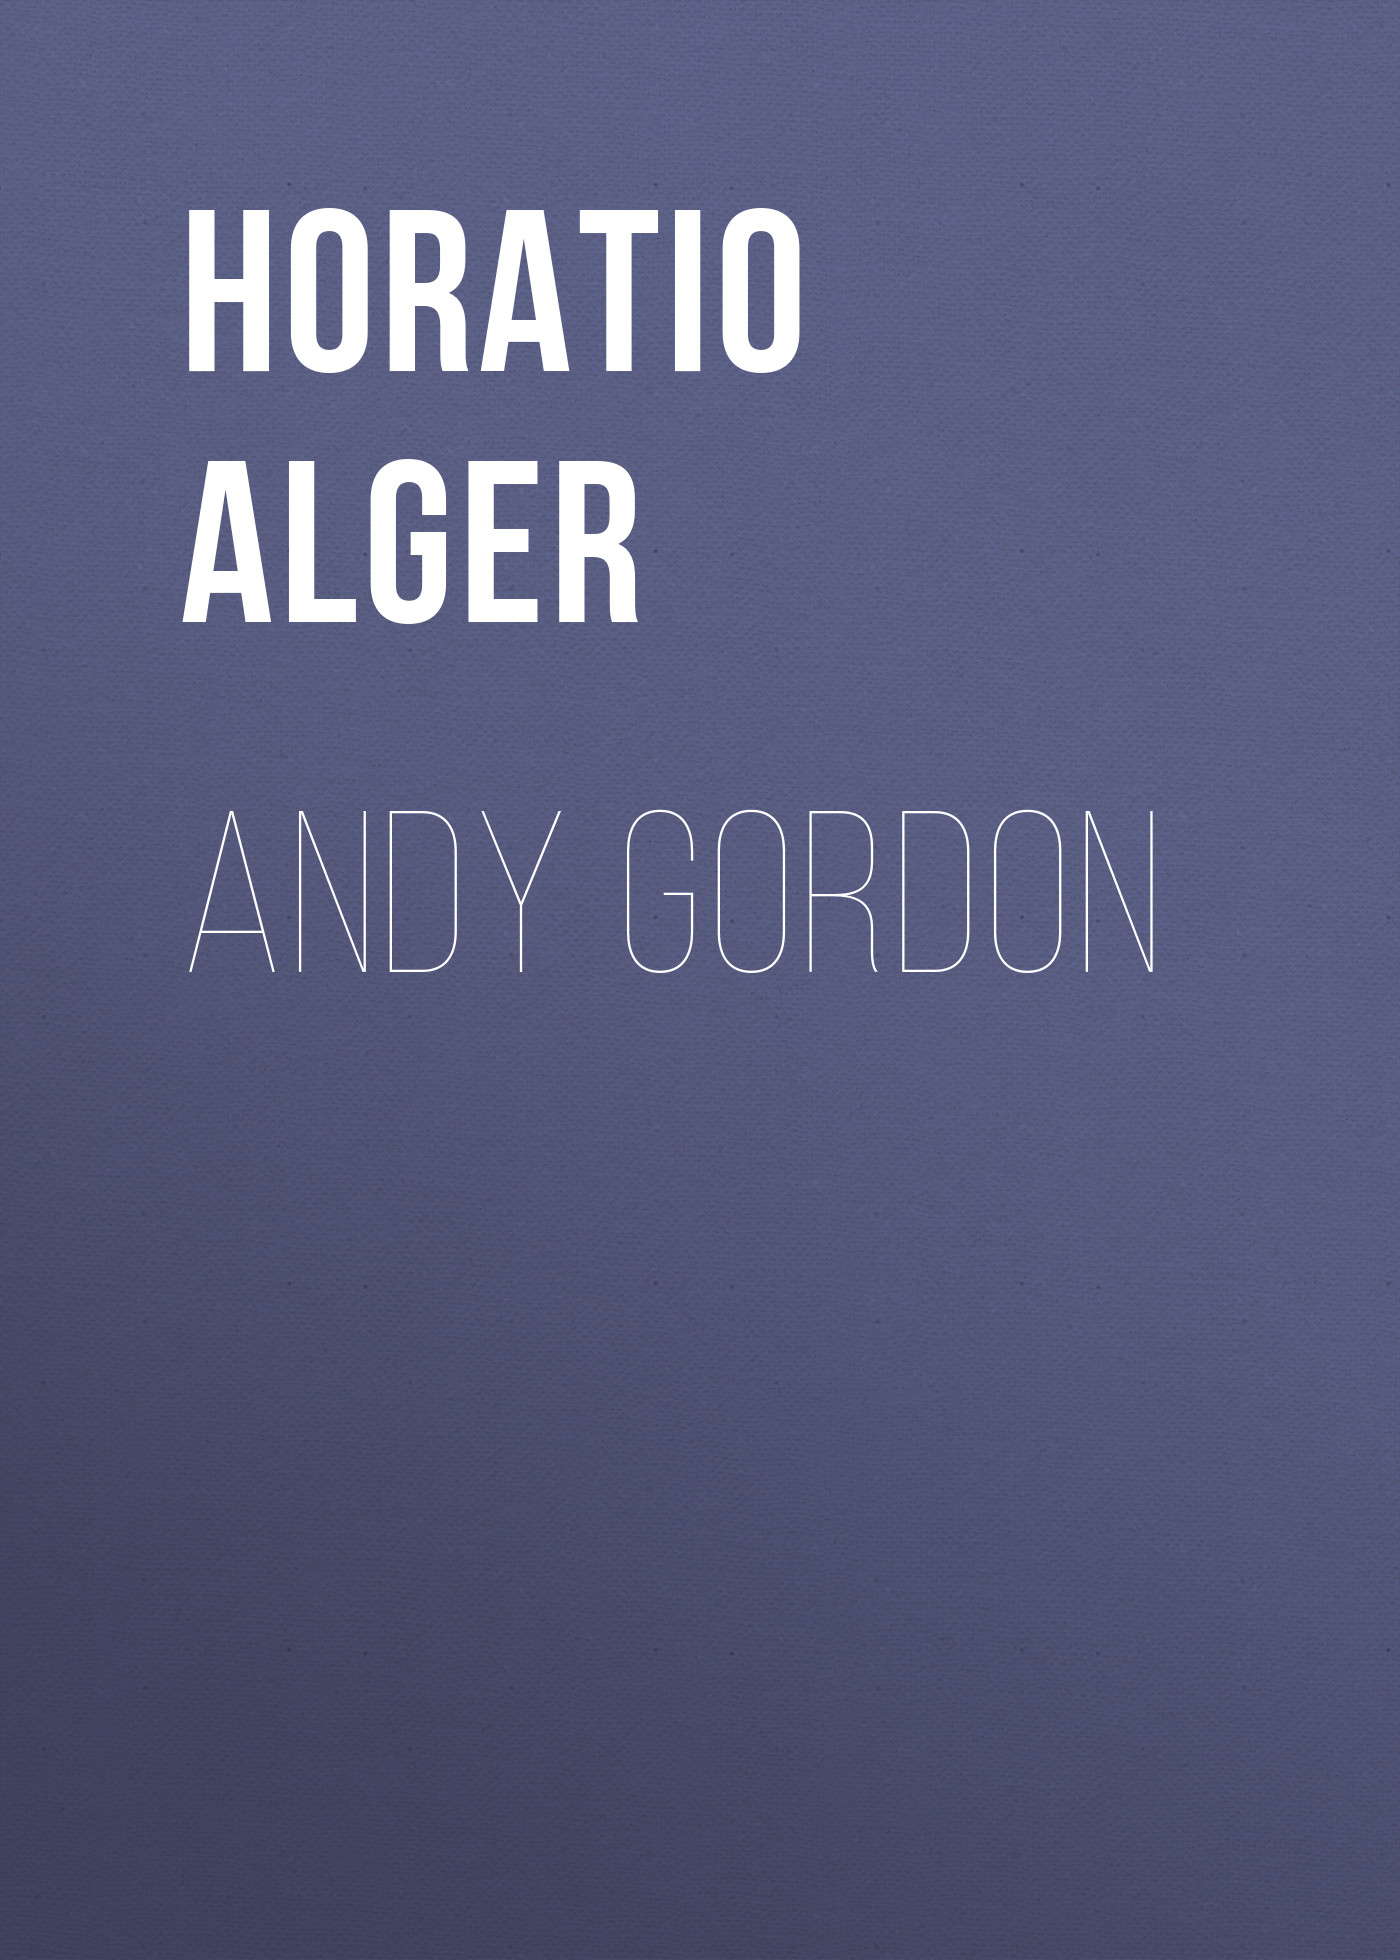 Книга Andy Gordon из серии , созданная Horatio Alger, может относится к жанру Зарубежная классика, Иностранные языки. Стоимость электронной книги Andy Gordon с идентификатором 23171587 составляет 5.99 руб.